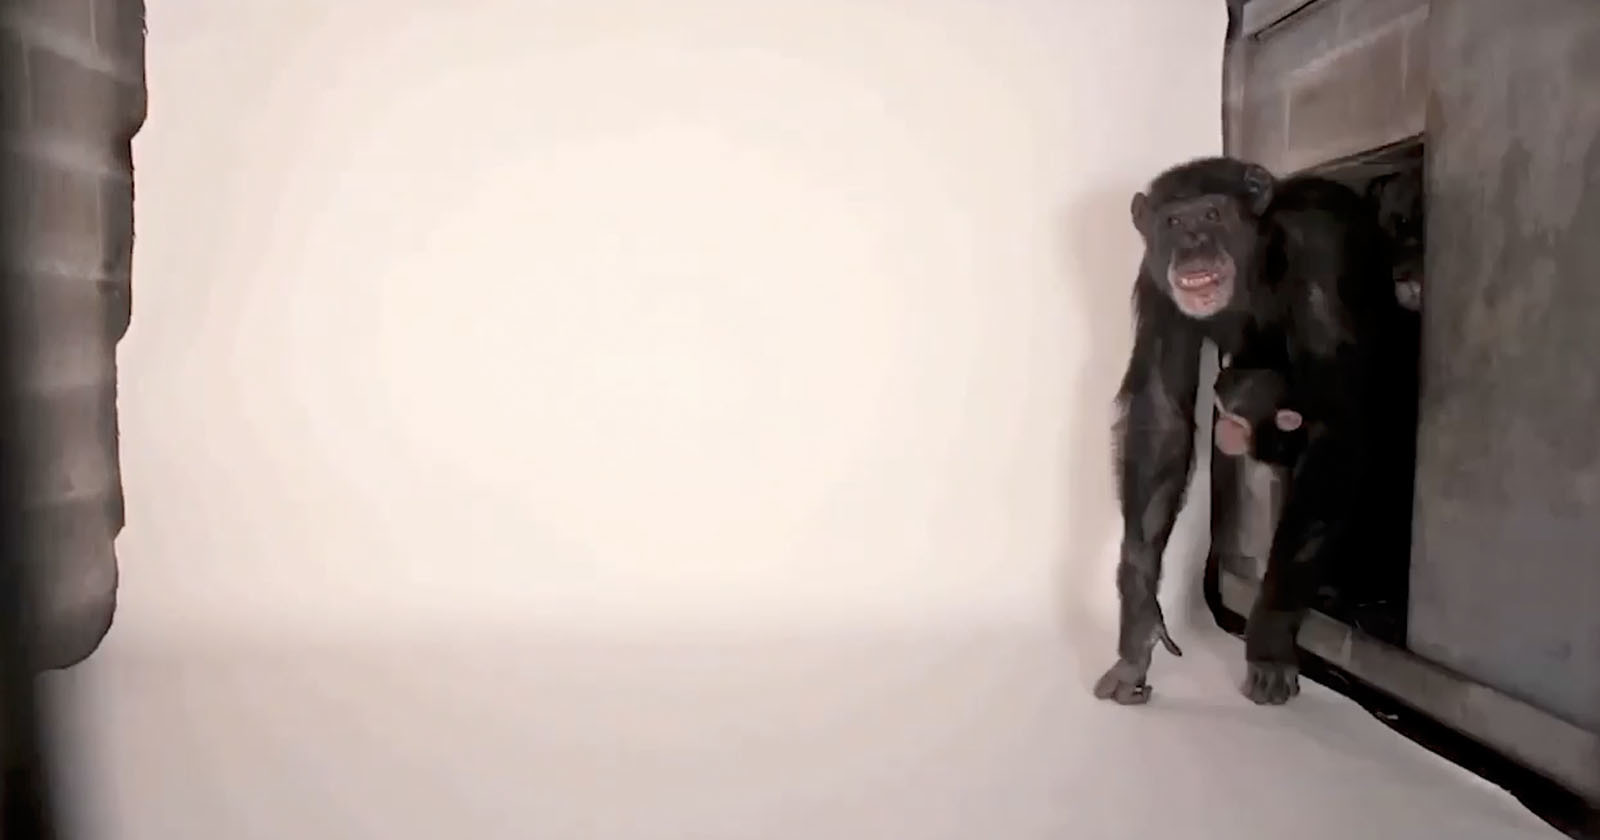 Chimp in the studio